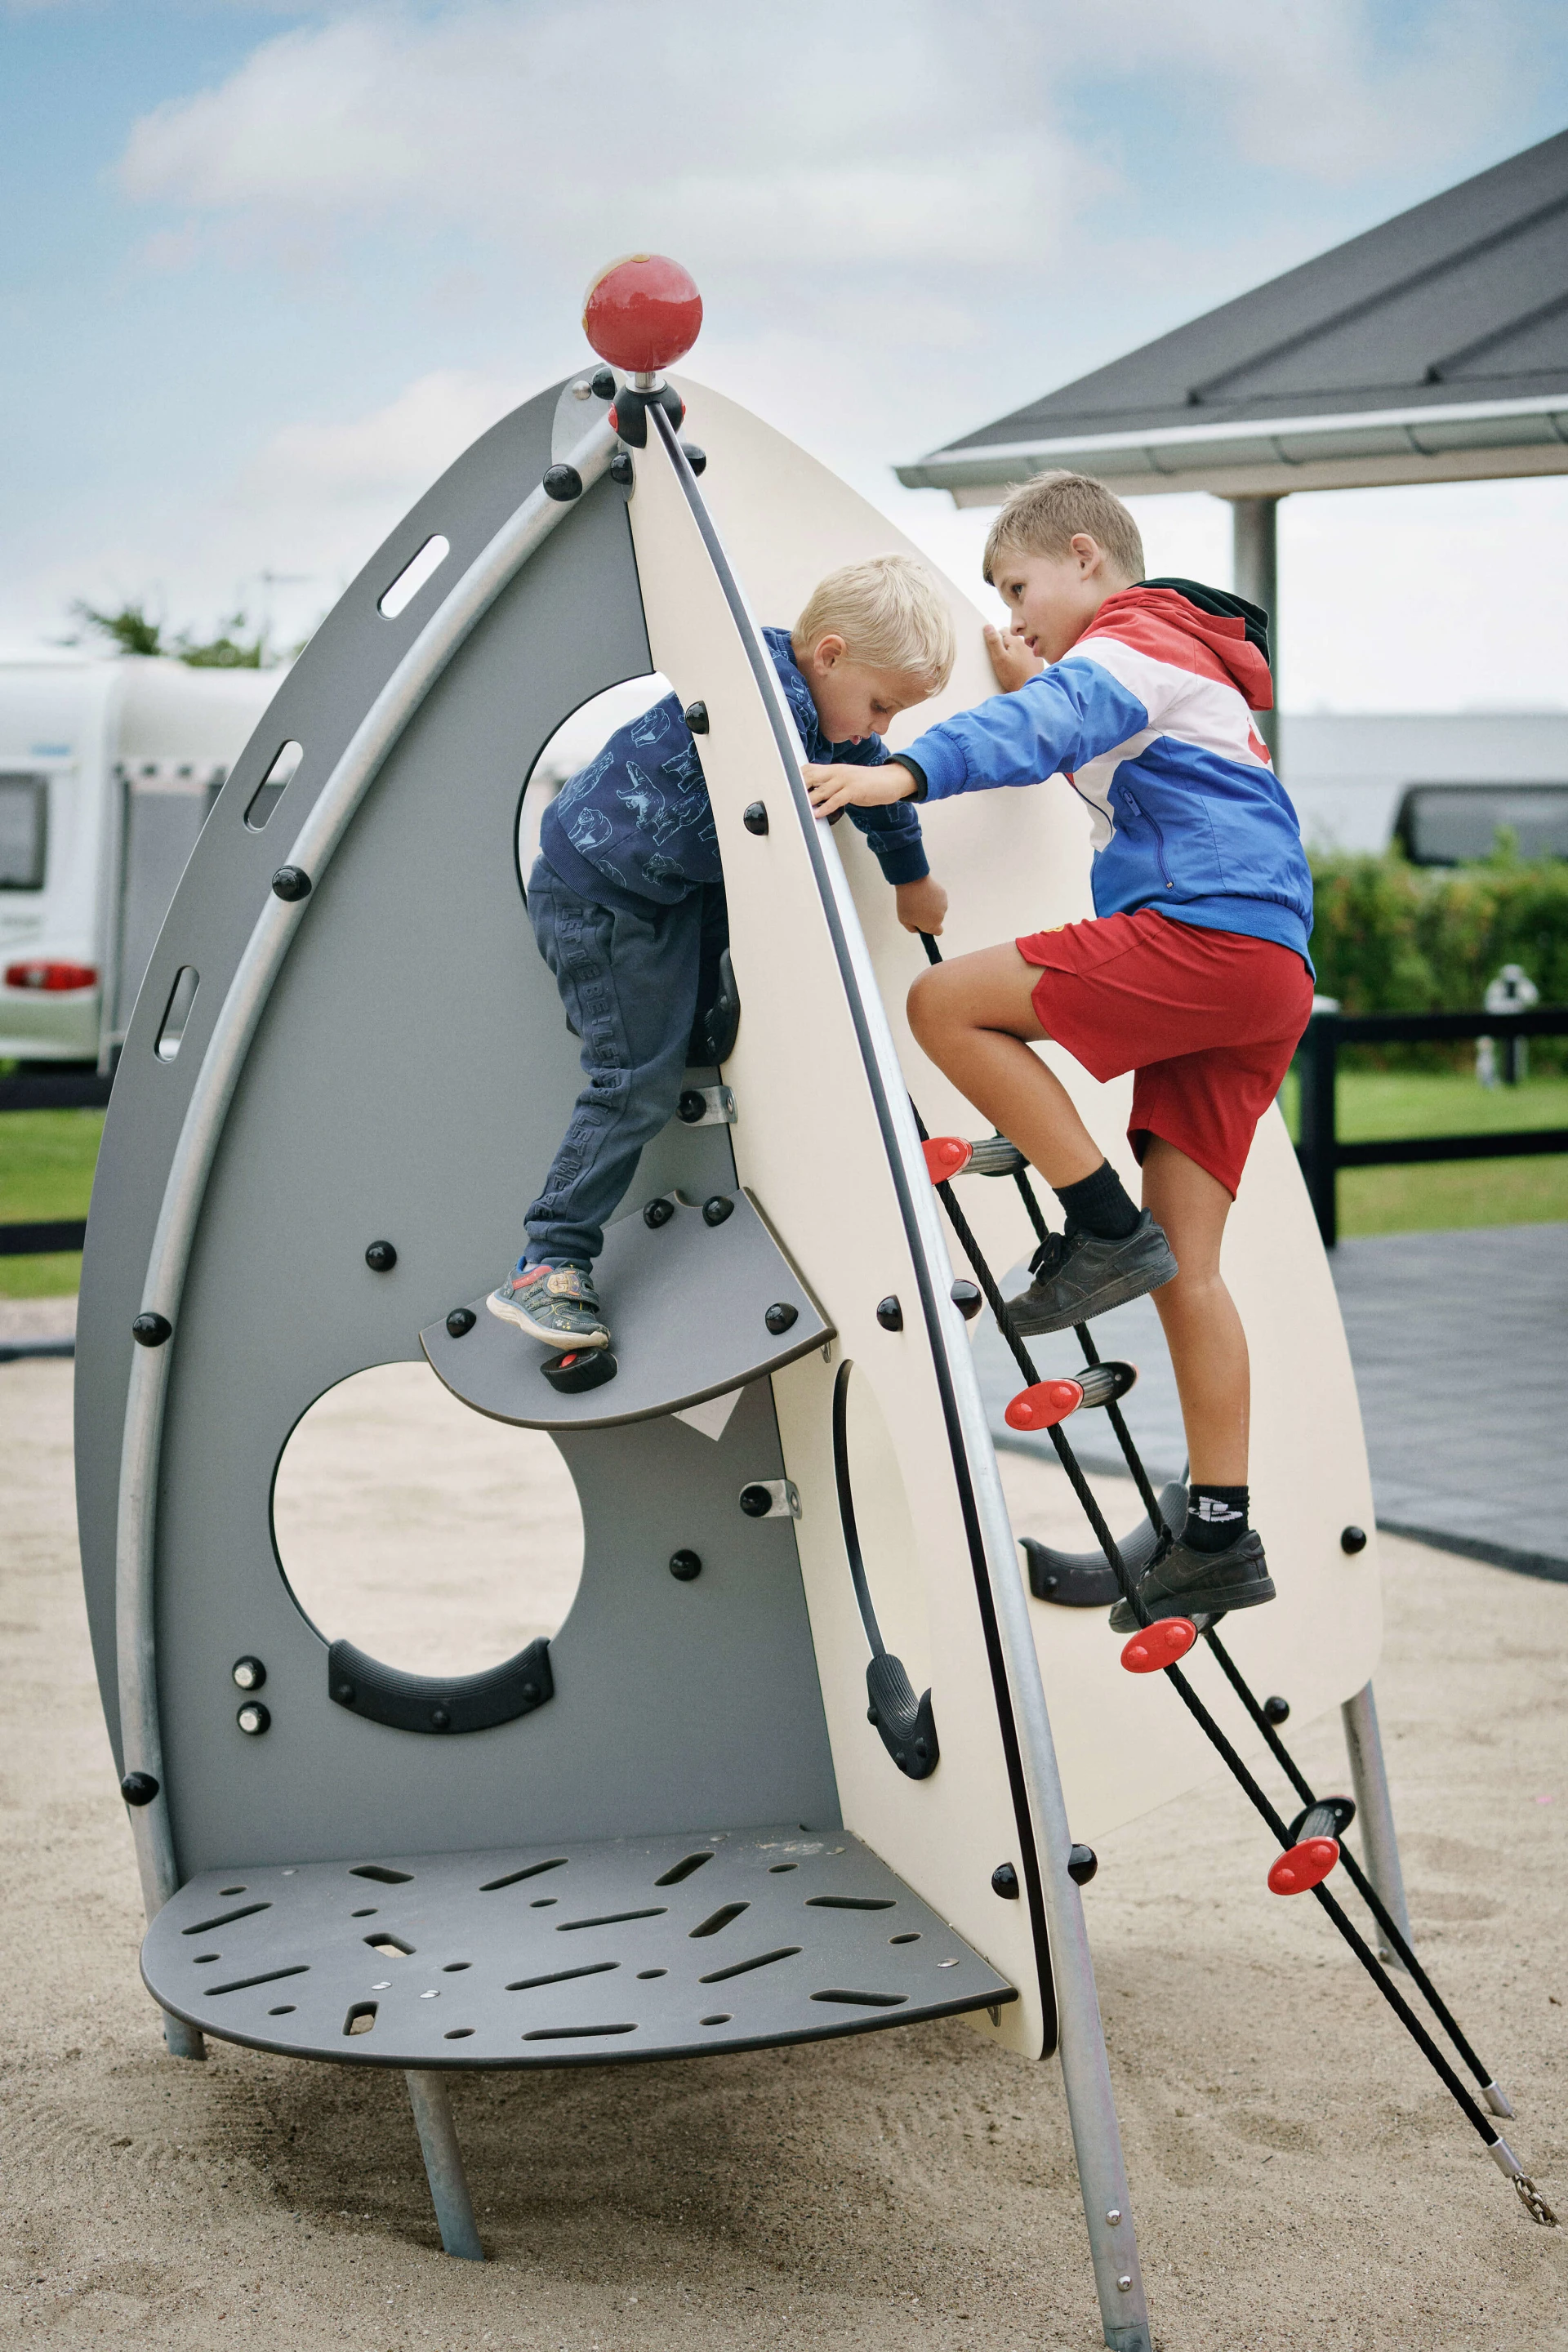 I bambini giocano sulle attrezzature del parco giochi a tema spaziale del campeggio CampOne